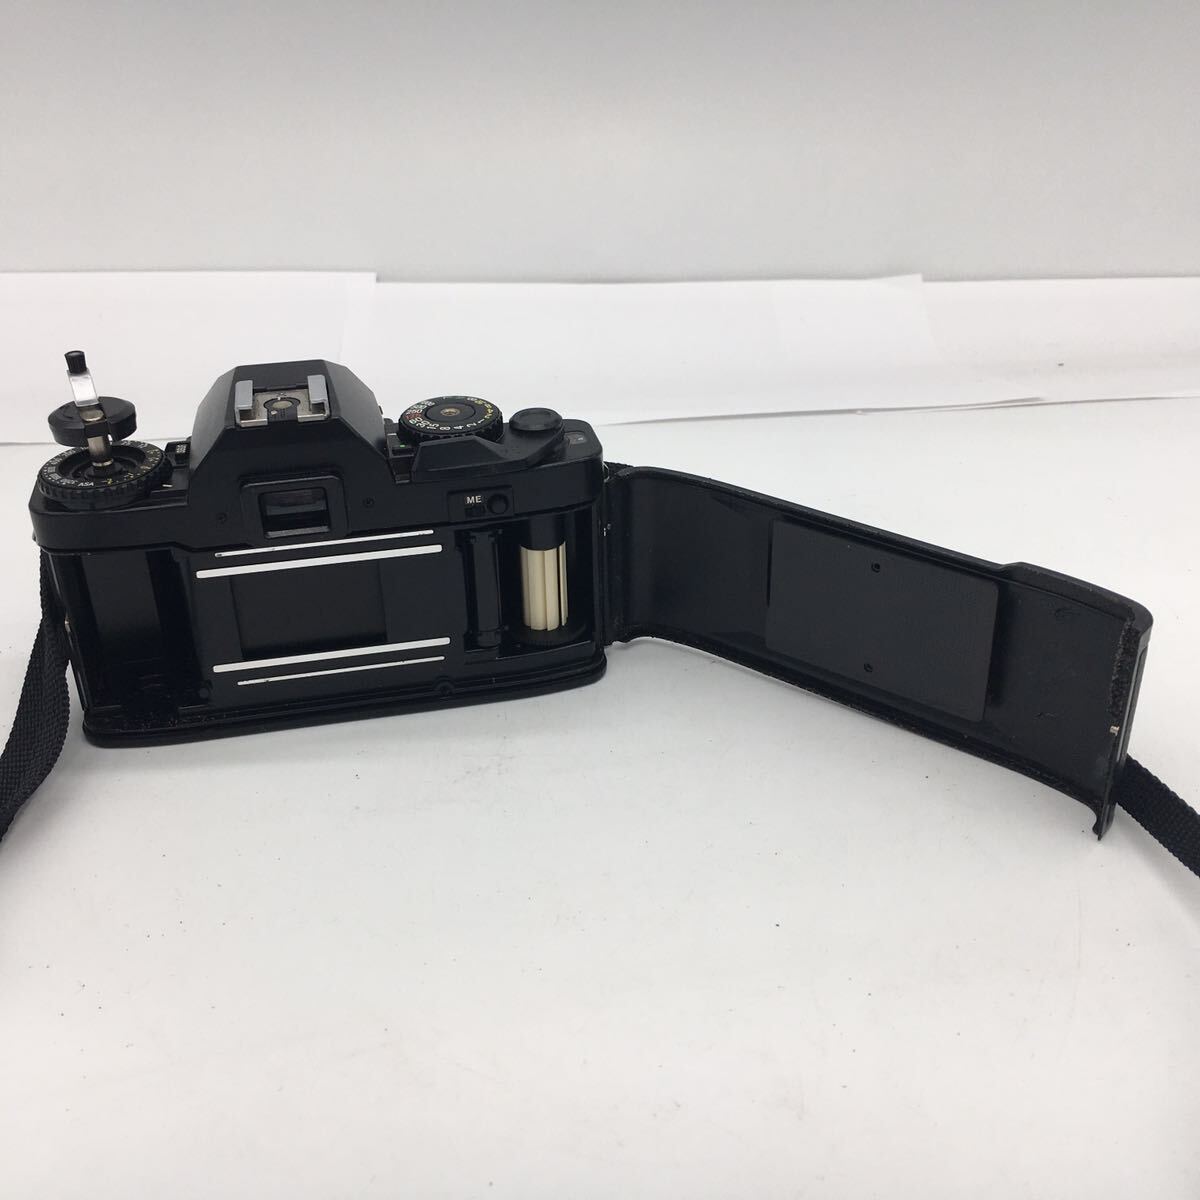 RICHO リコー XR7 ブラック ボディ / RIKENON 1:1.7 50mm レンズ 一眼レフ フィルム カメラ ヴィンテージ カバー付属 現状品 _画像8